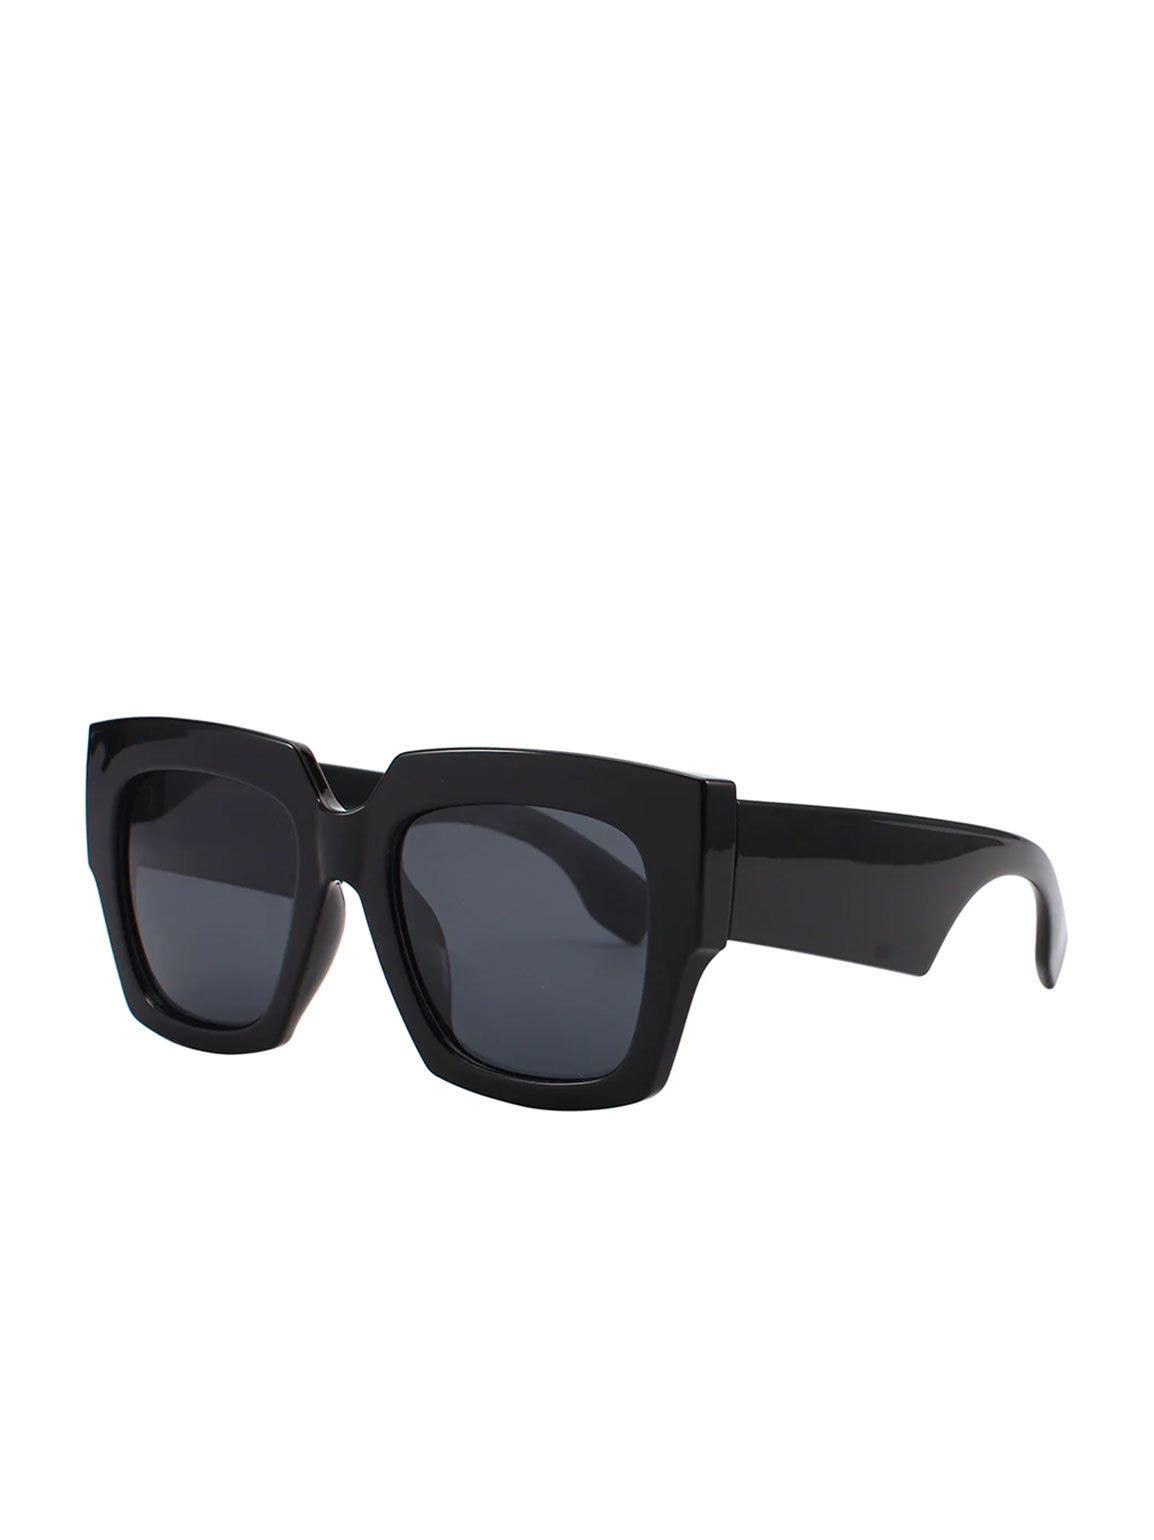 MARLEY | Polarized Sunglasses | Black